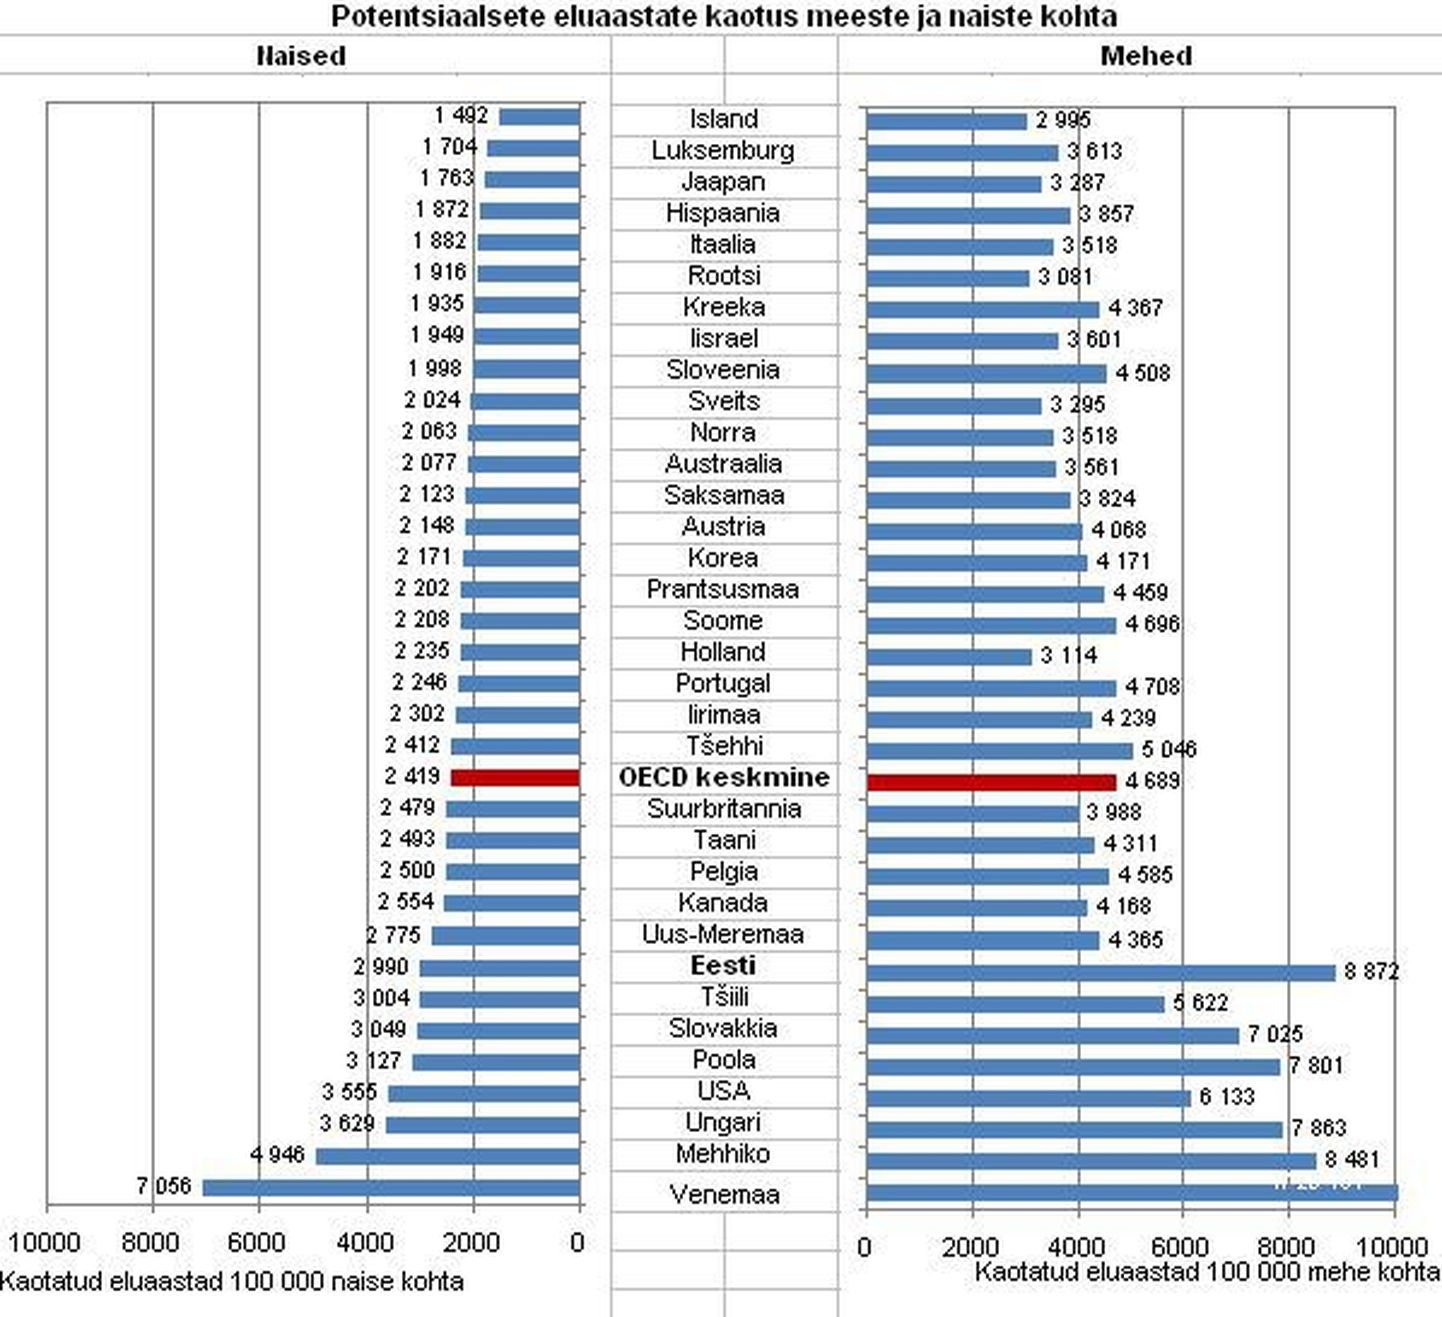 Eesti kaotas aastal 2009 naiste enne 70. eluaastat toimunud surmade tõttu peaaegu 3000 eluaastat 100 000 naise kohta. Meeste sama näitaja oli OECD riikide suurim – üle 8800 aasta 100 000 mehe kohta.